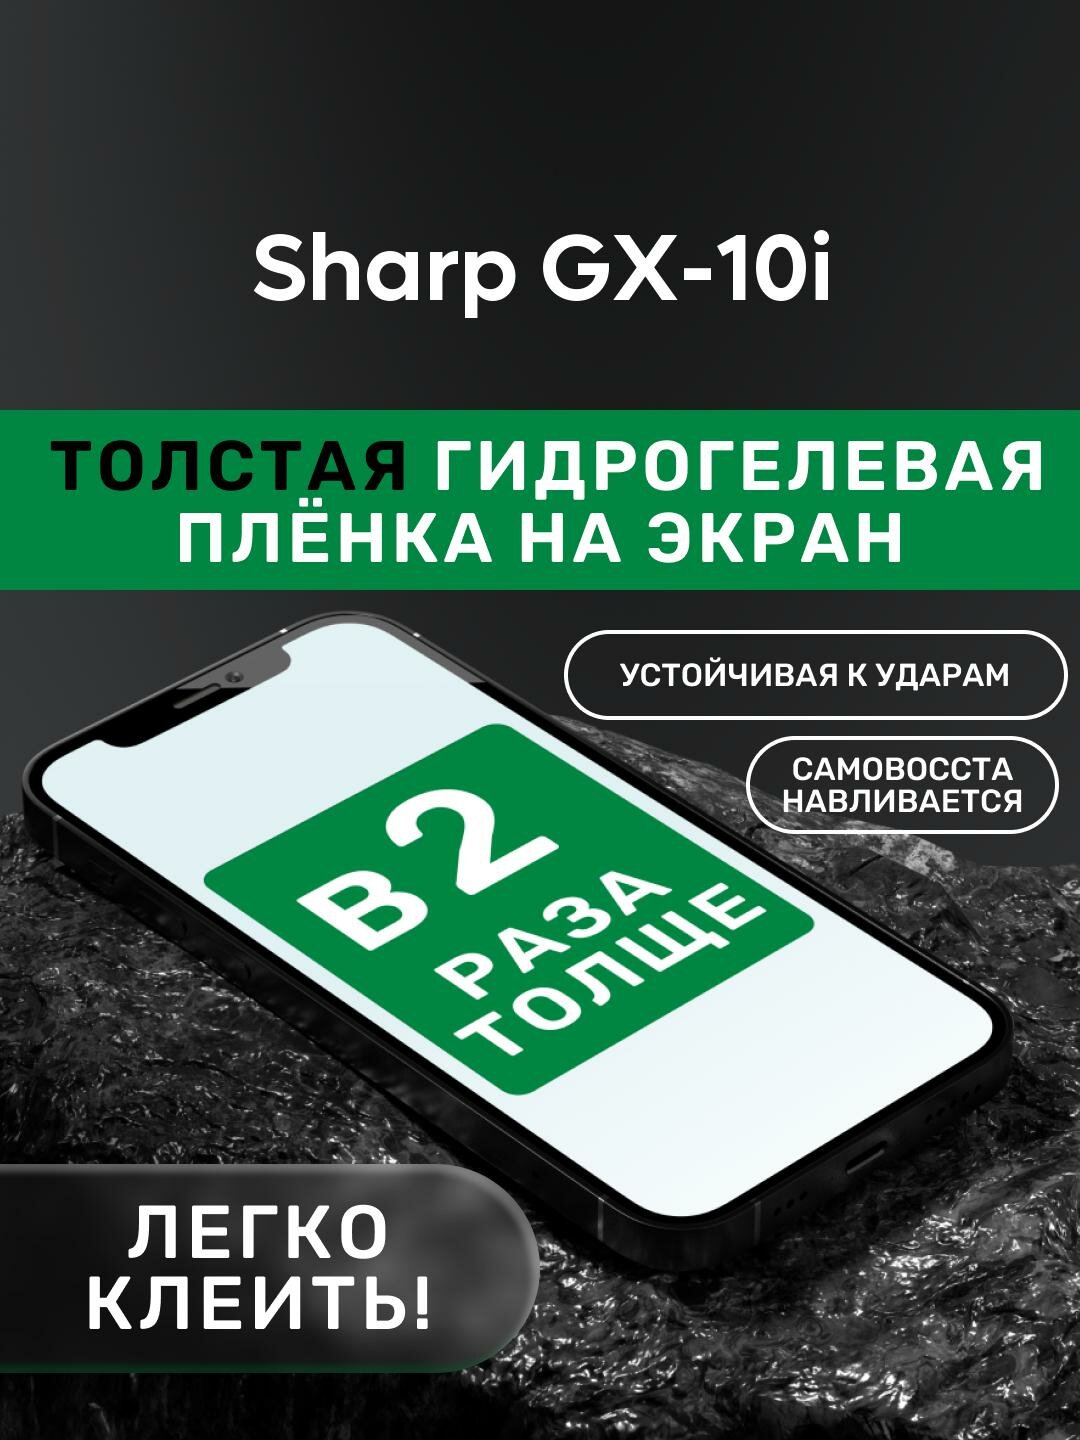 Гидрогелевая утолщённая защитная плёнка на экран для Sharp GX-10i